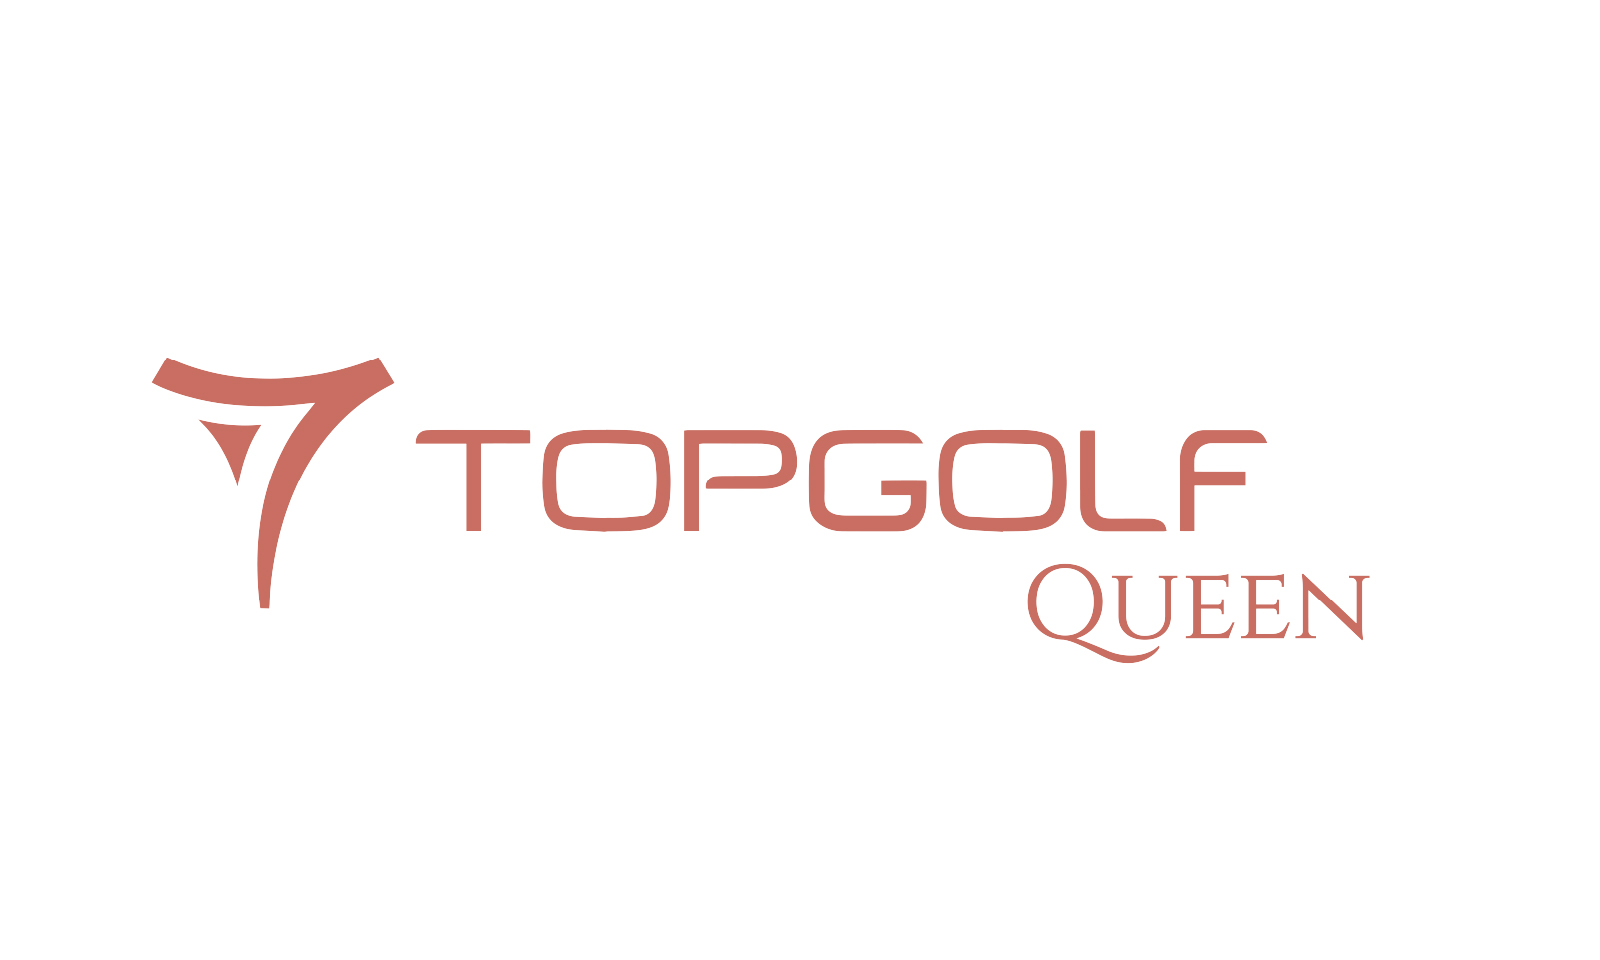 Topgolf Queen - PIK Avenue